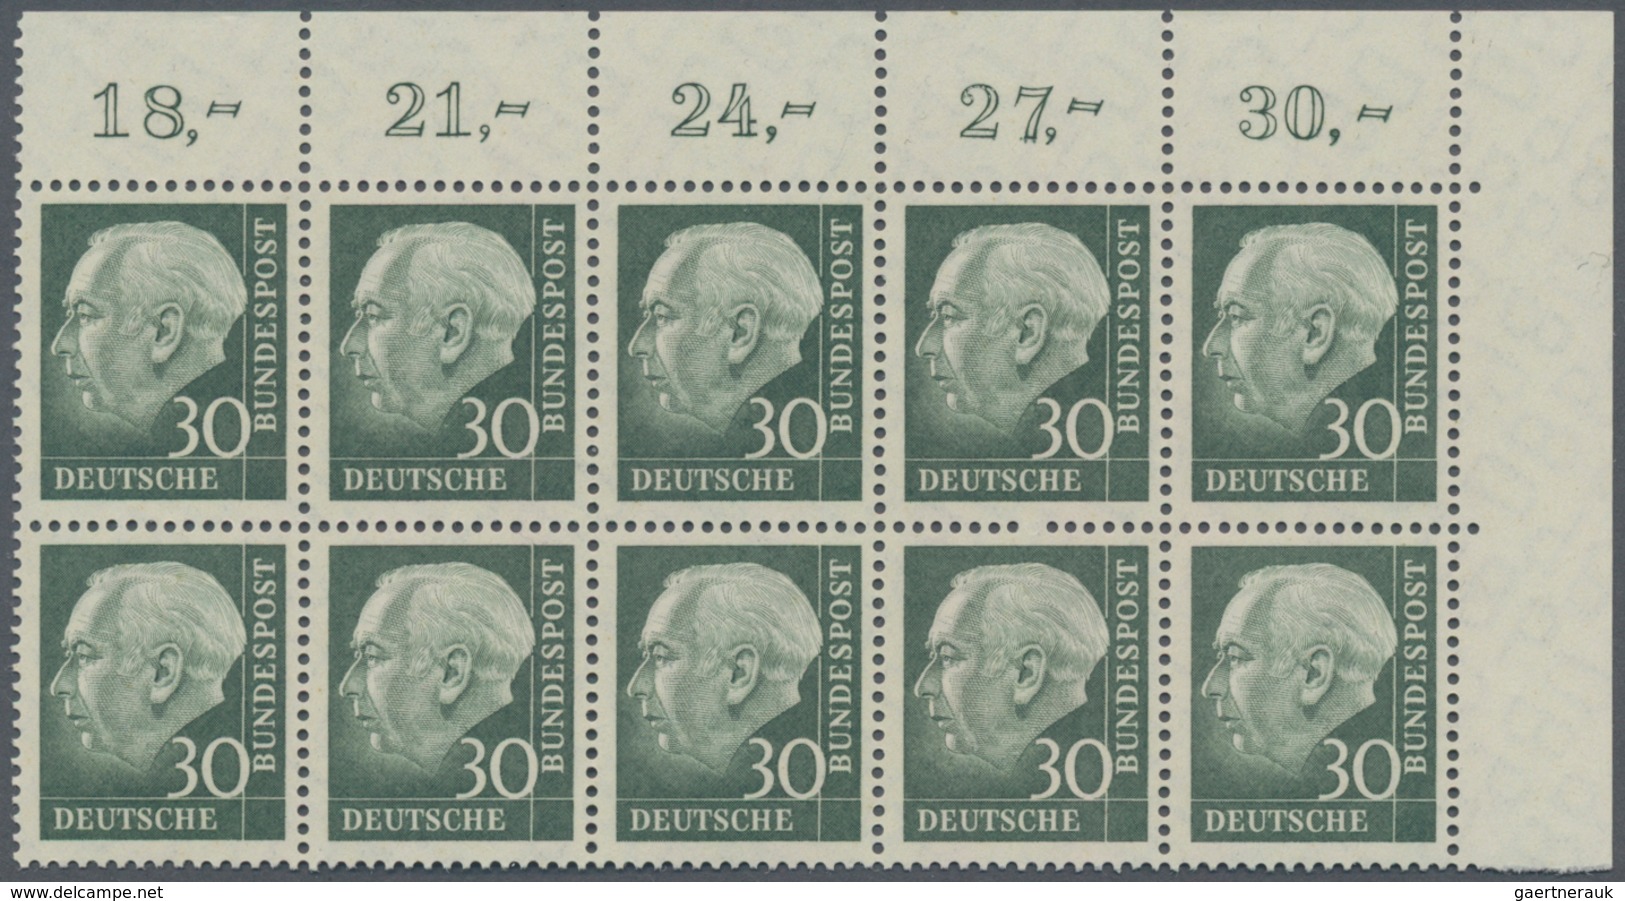 Bundesrepublik Deutschland: 1960, Freimarken Heuss lumogen 8 Werte je im Zehnerblock Eckrand oben re